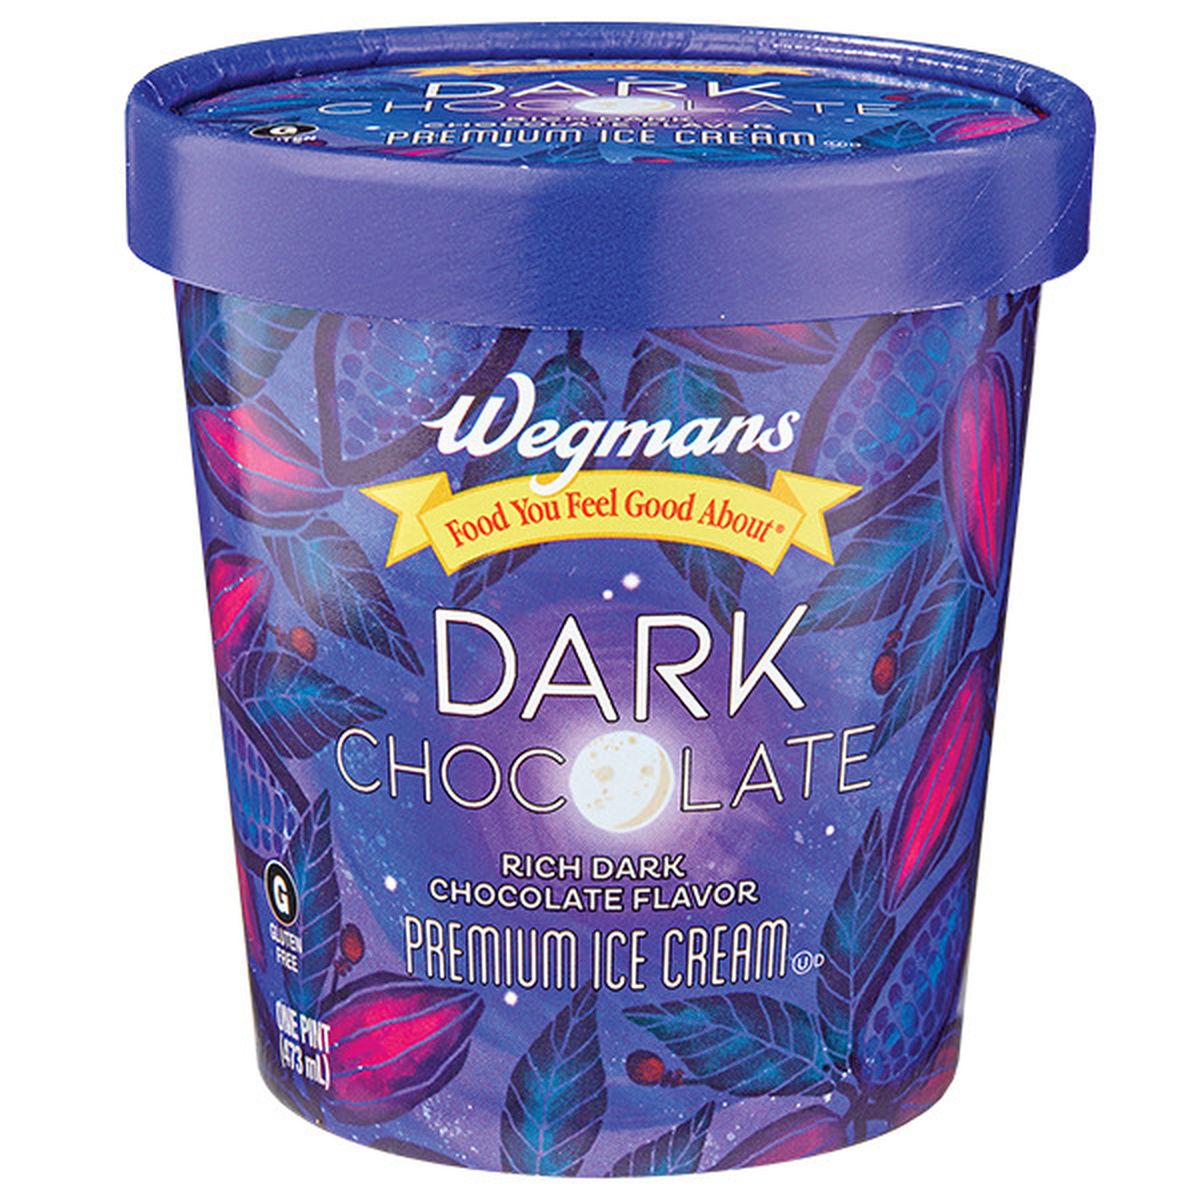 Calories in Wegmans Dark Chocolate Premium Ice Cream